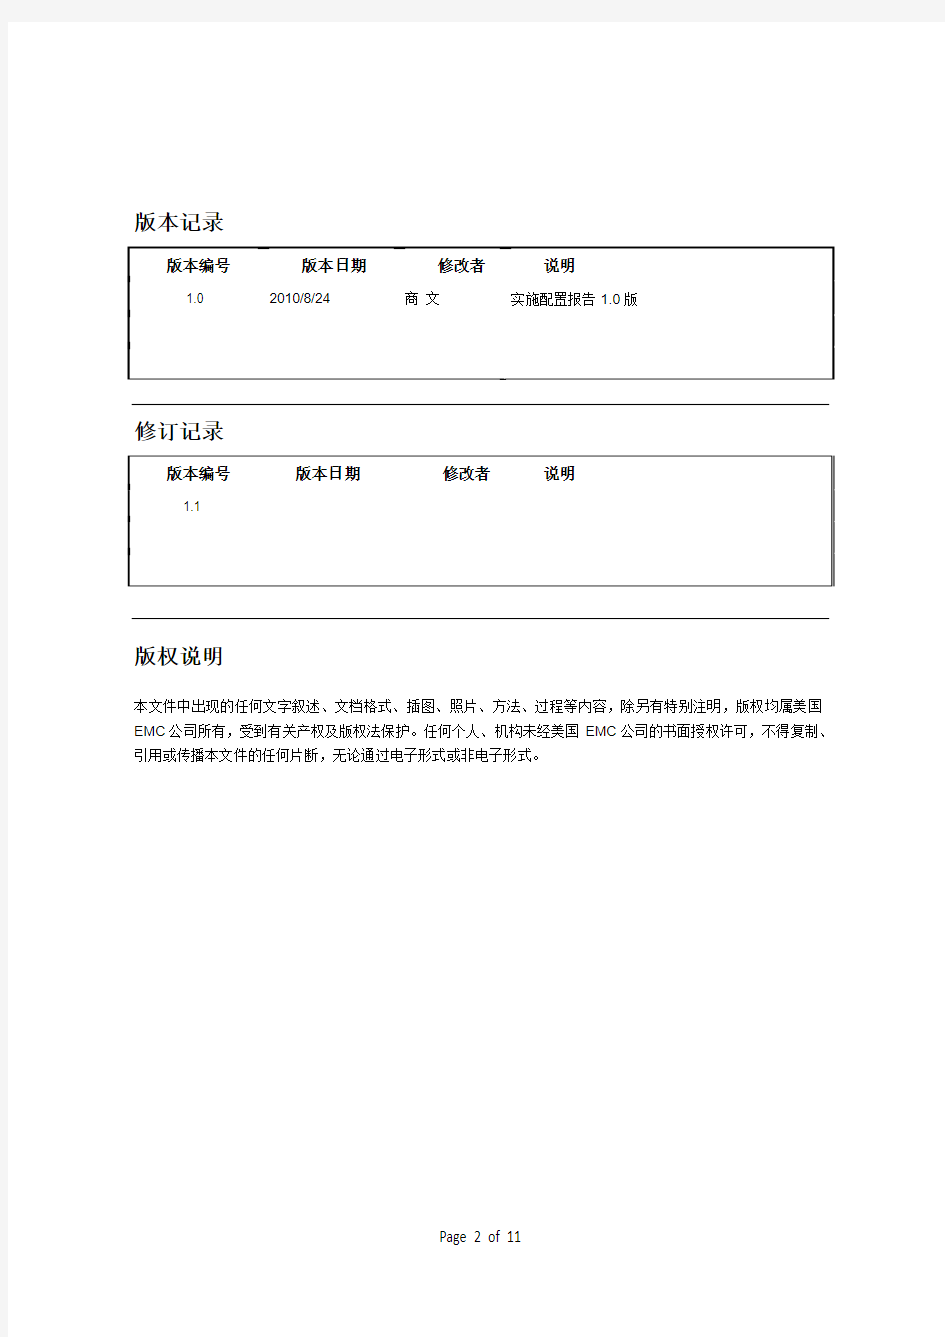 上海地税局-EMC存储-实施配置报告